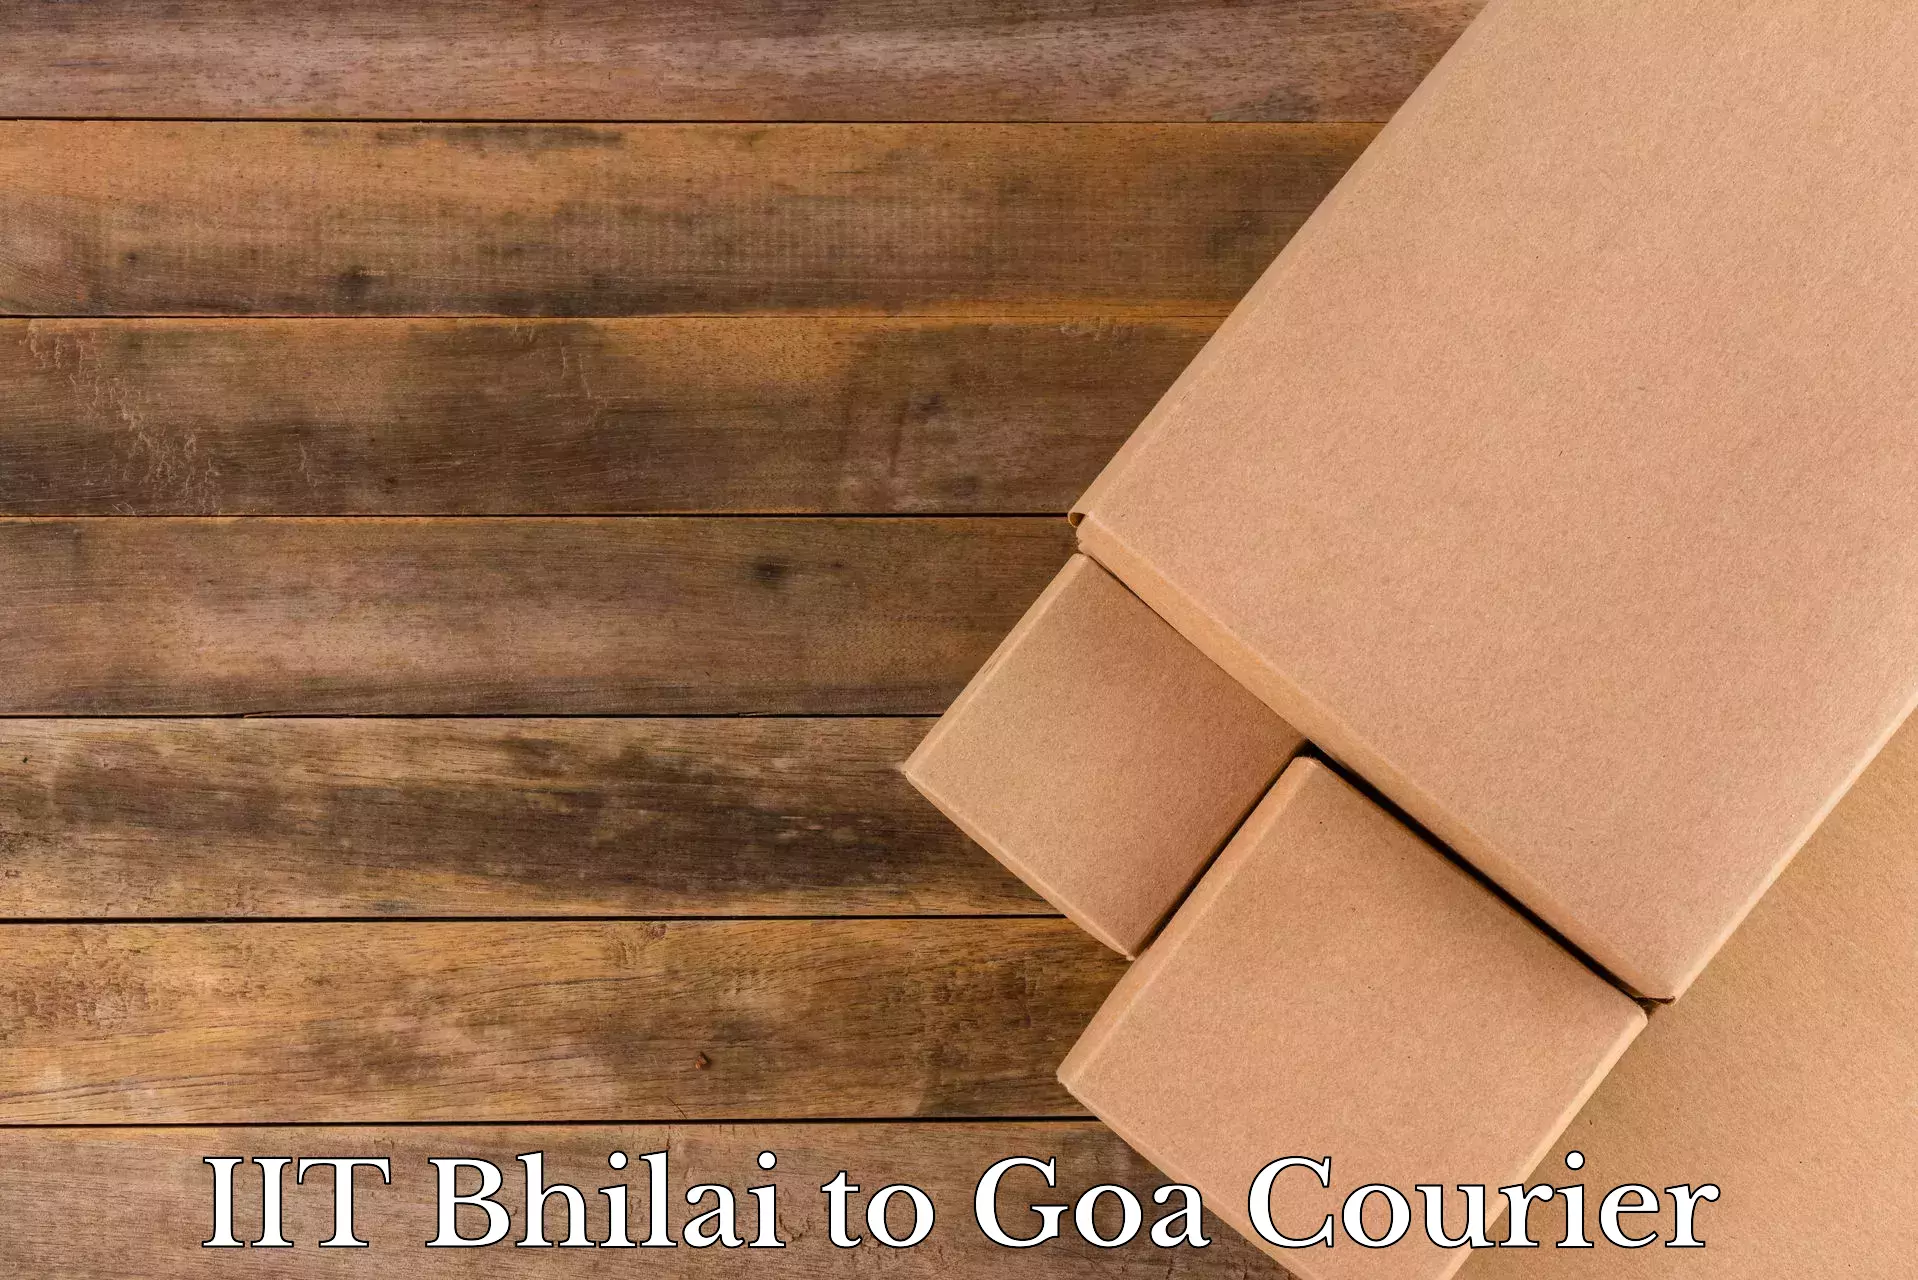 Home shifting experts IIT Bhilai to South Goa